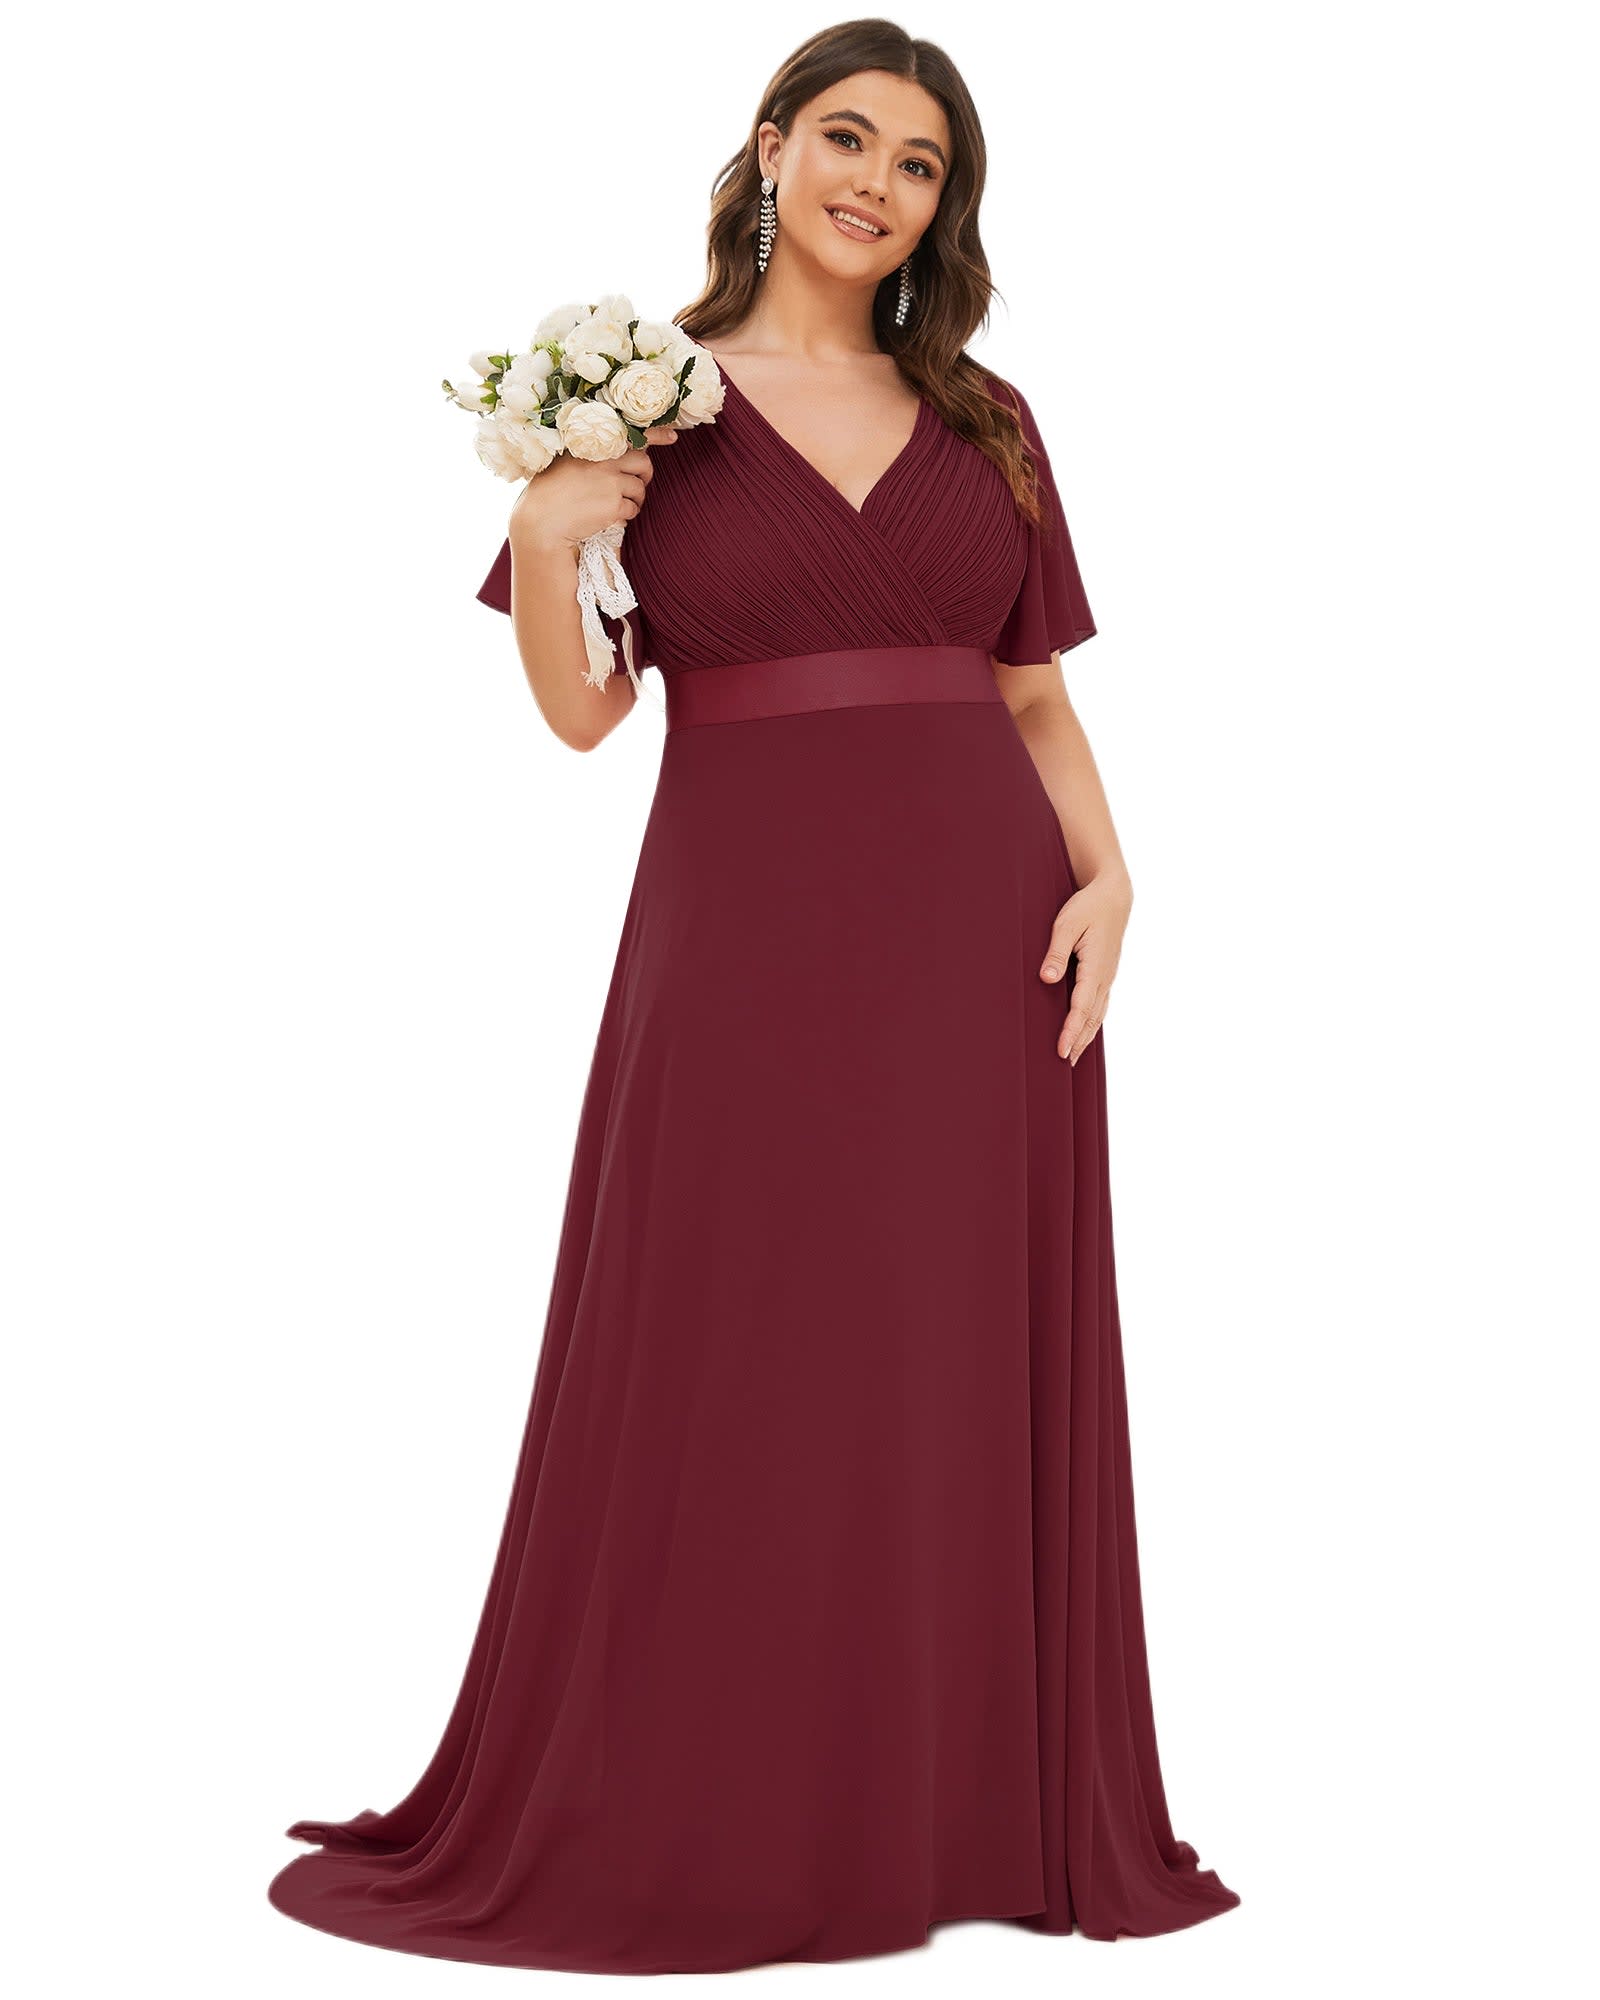 Long Chiffon Empire Waist Bridesmaid Dress with Short Flutter Sleeves | Burgundy